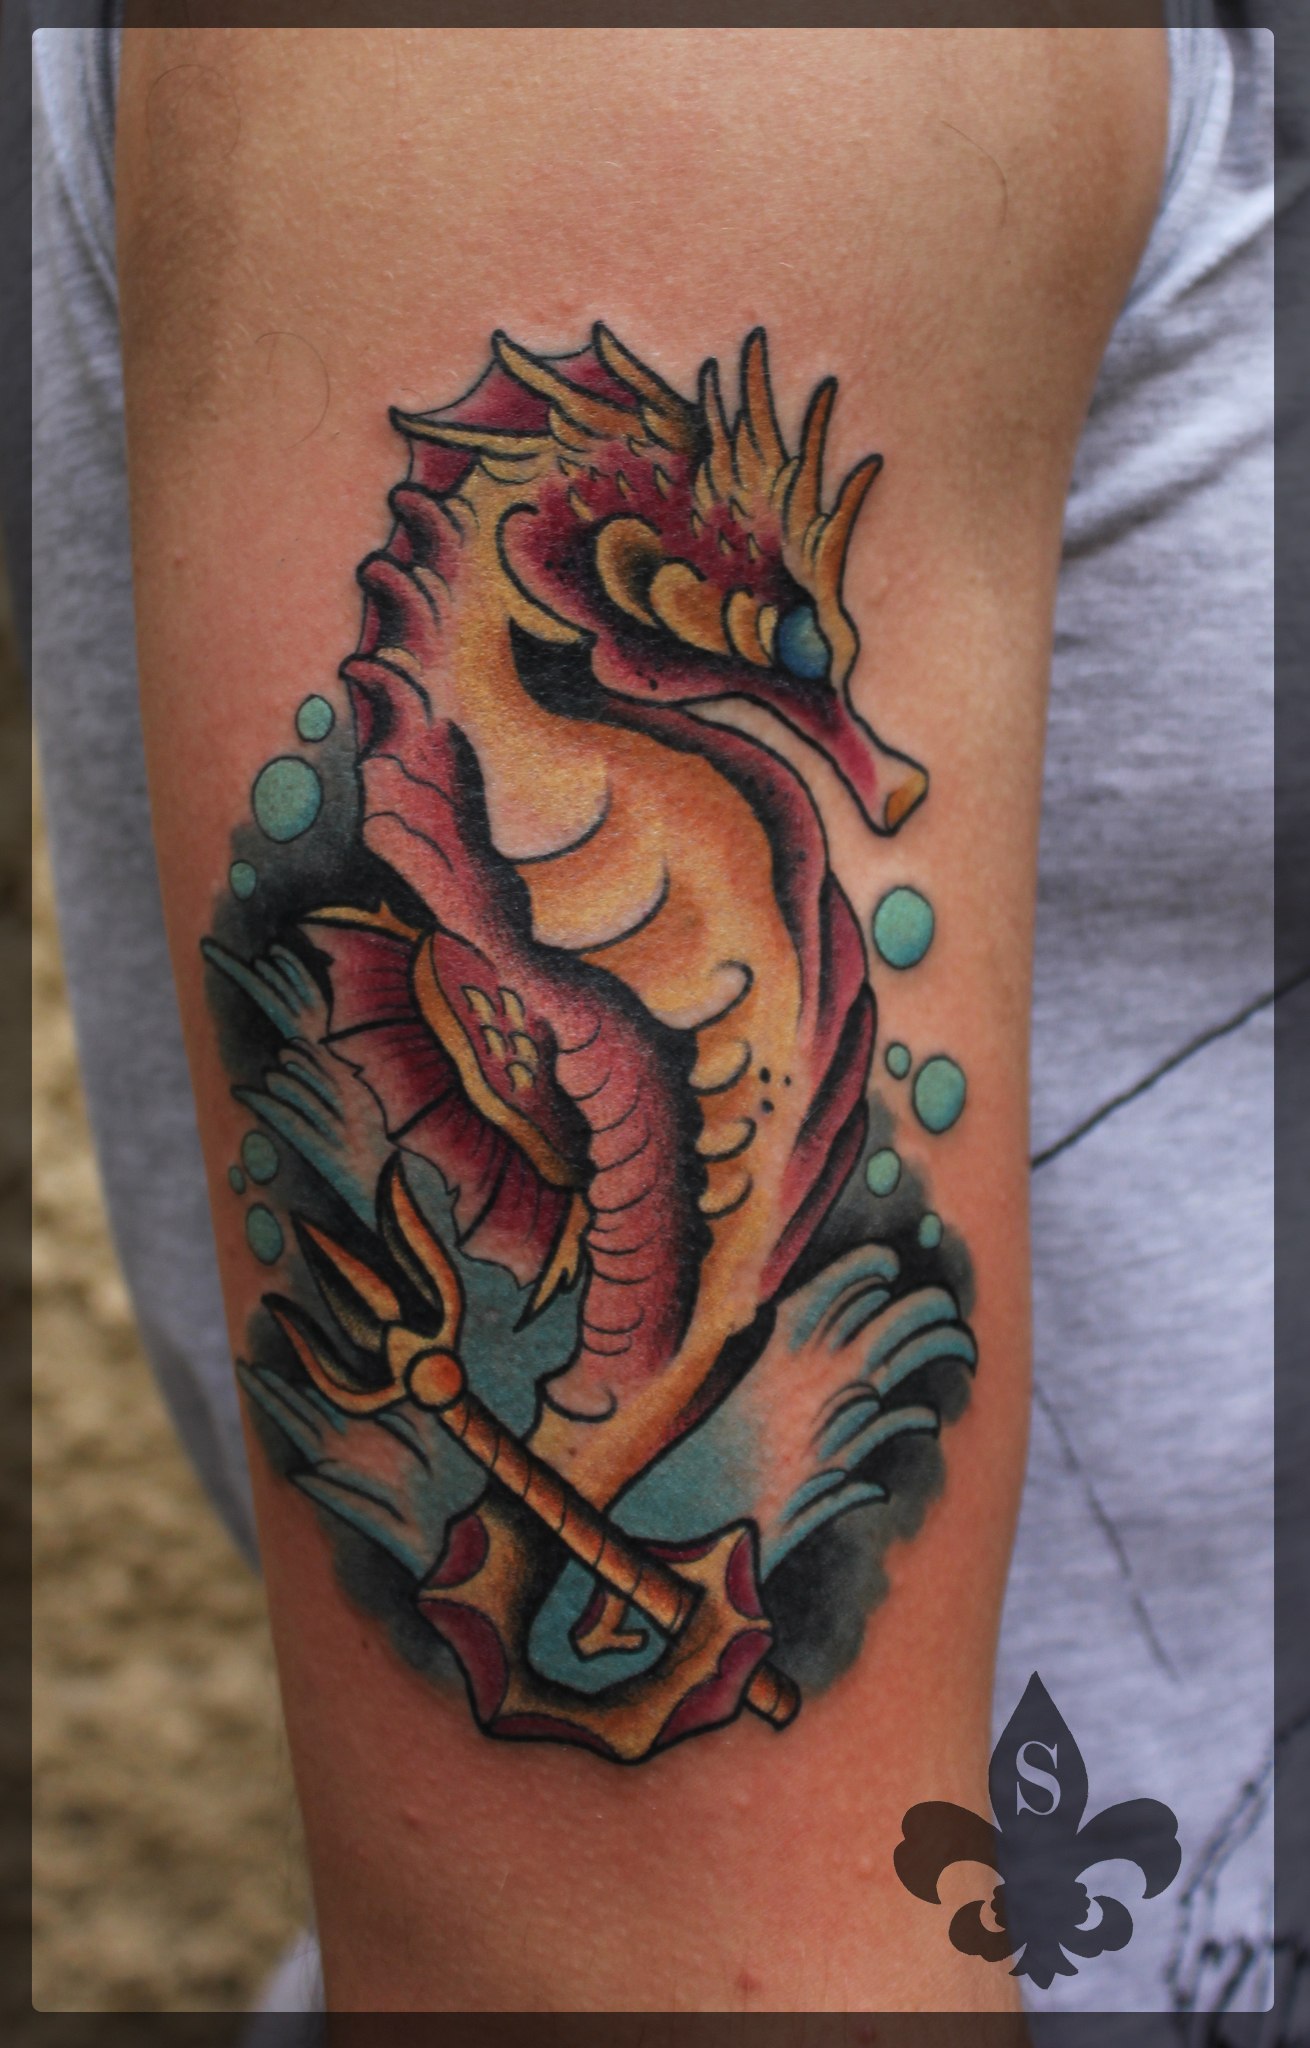 Художественная татуировка "Морской конек" от Александра Соды.